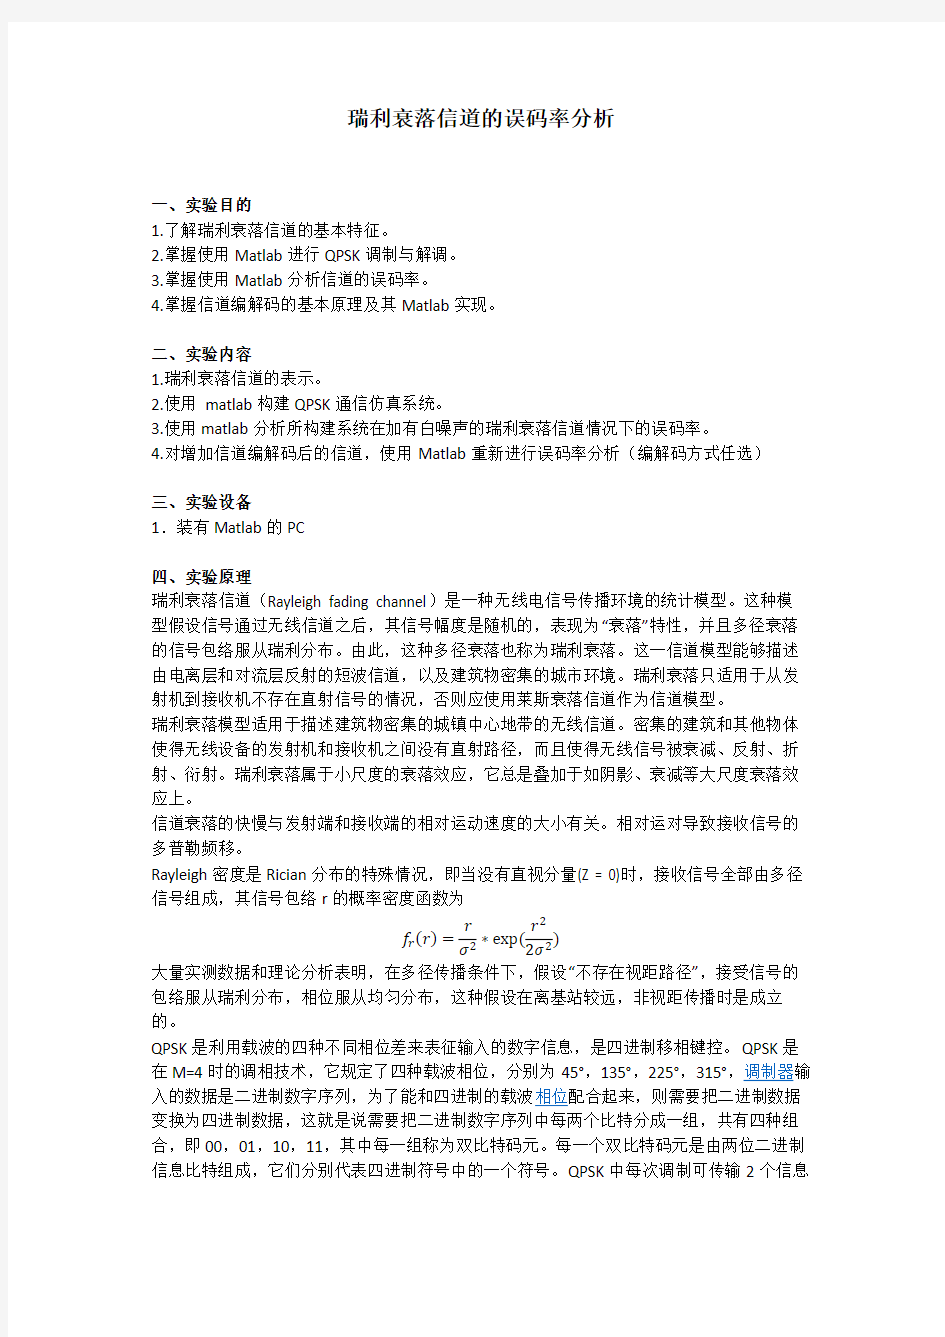 上海交通大学瑞利衰落信道的误码率分析